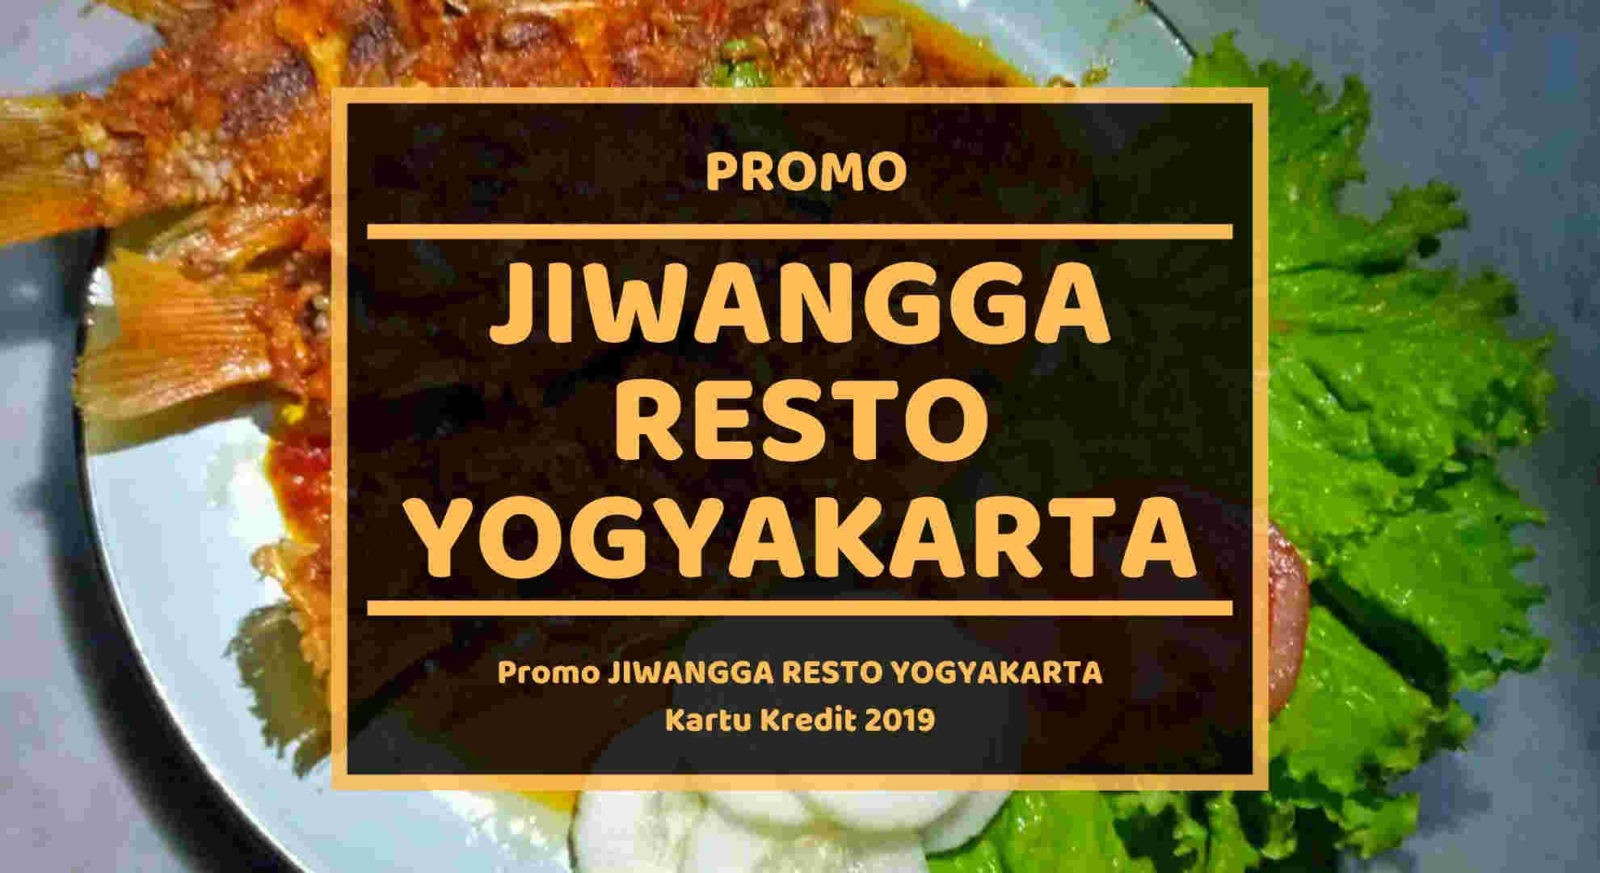 Promo Jiwangga Resto Yogyakarta